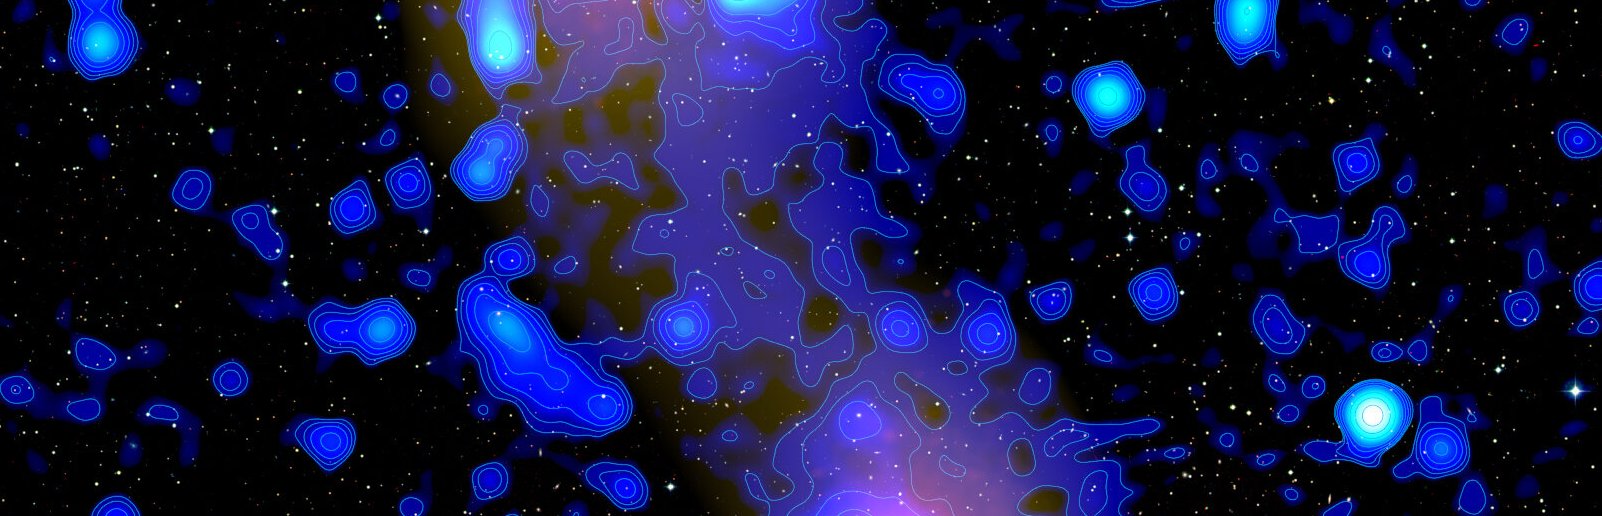 Une vue en fausses couleurs des rayonnements associés au filament entre les amas galactiques observés avec Lofar. © XMM-Newton (rayons X), satellite Planck (paramètre y), F. Govoni et al. 2019, Science (radio). Image de M. Murgia, Inaf.